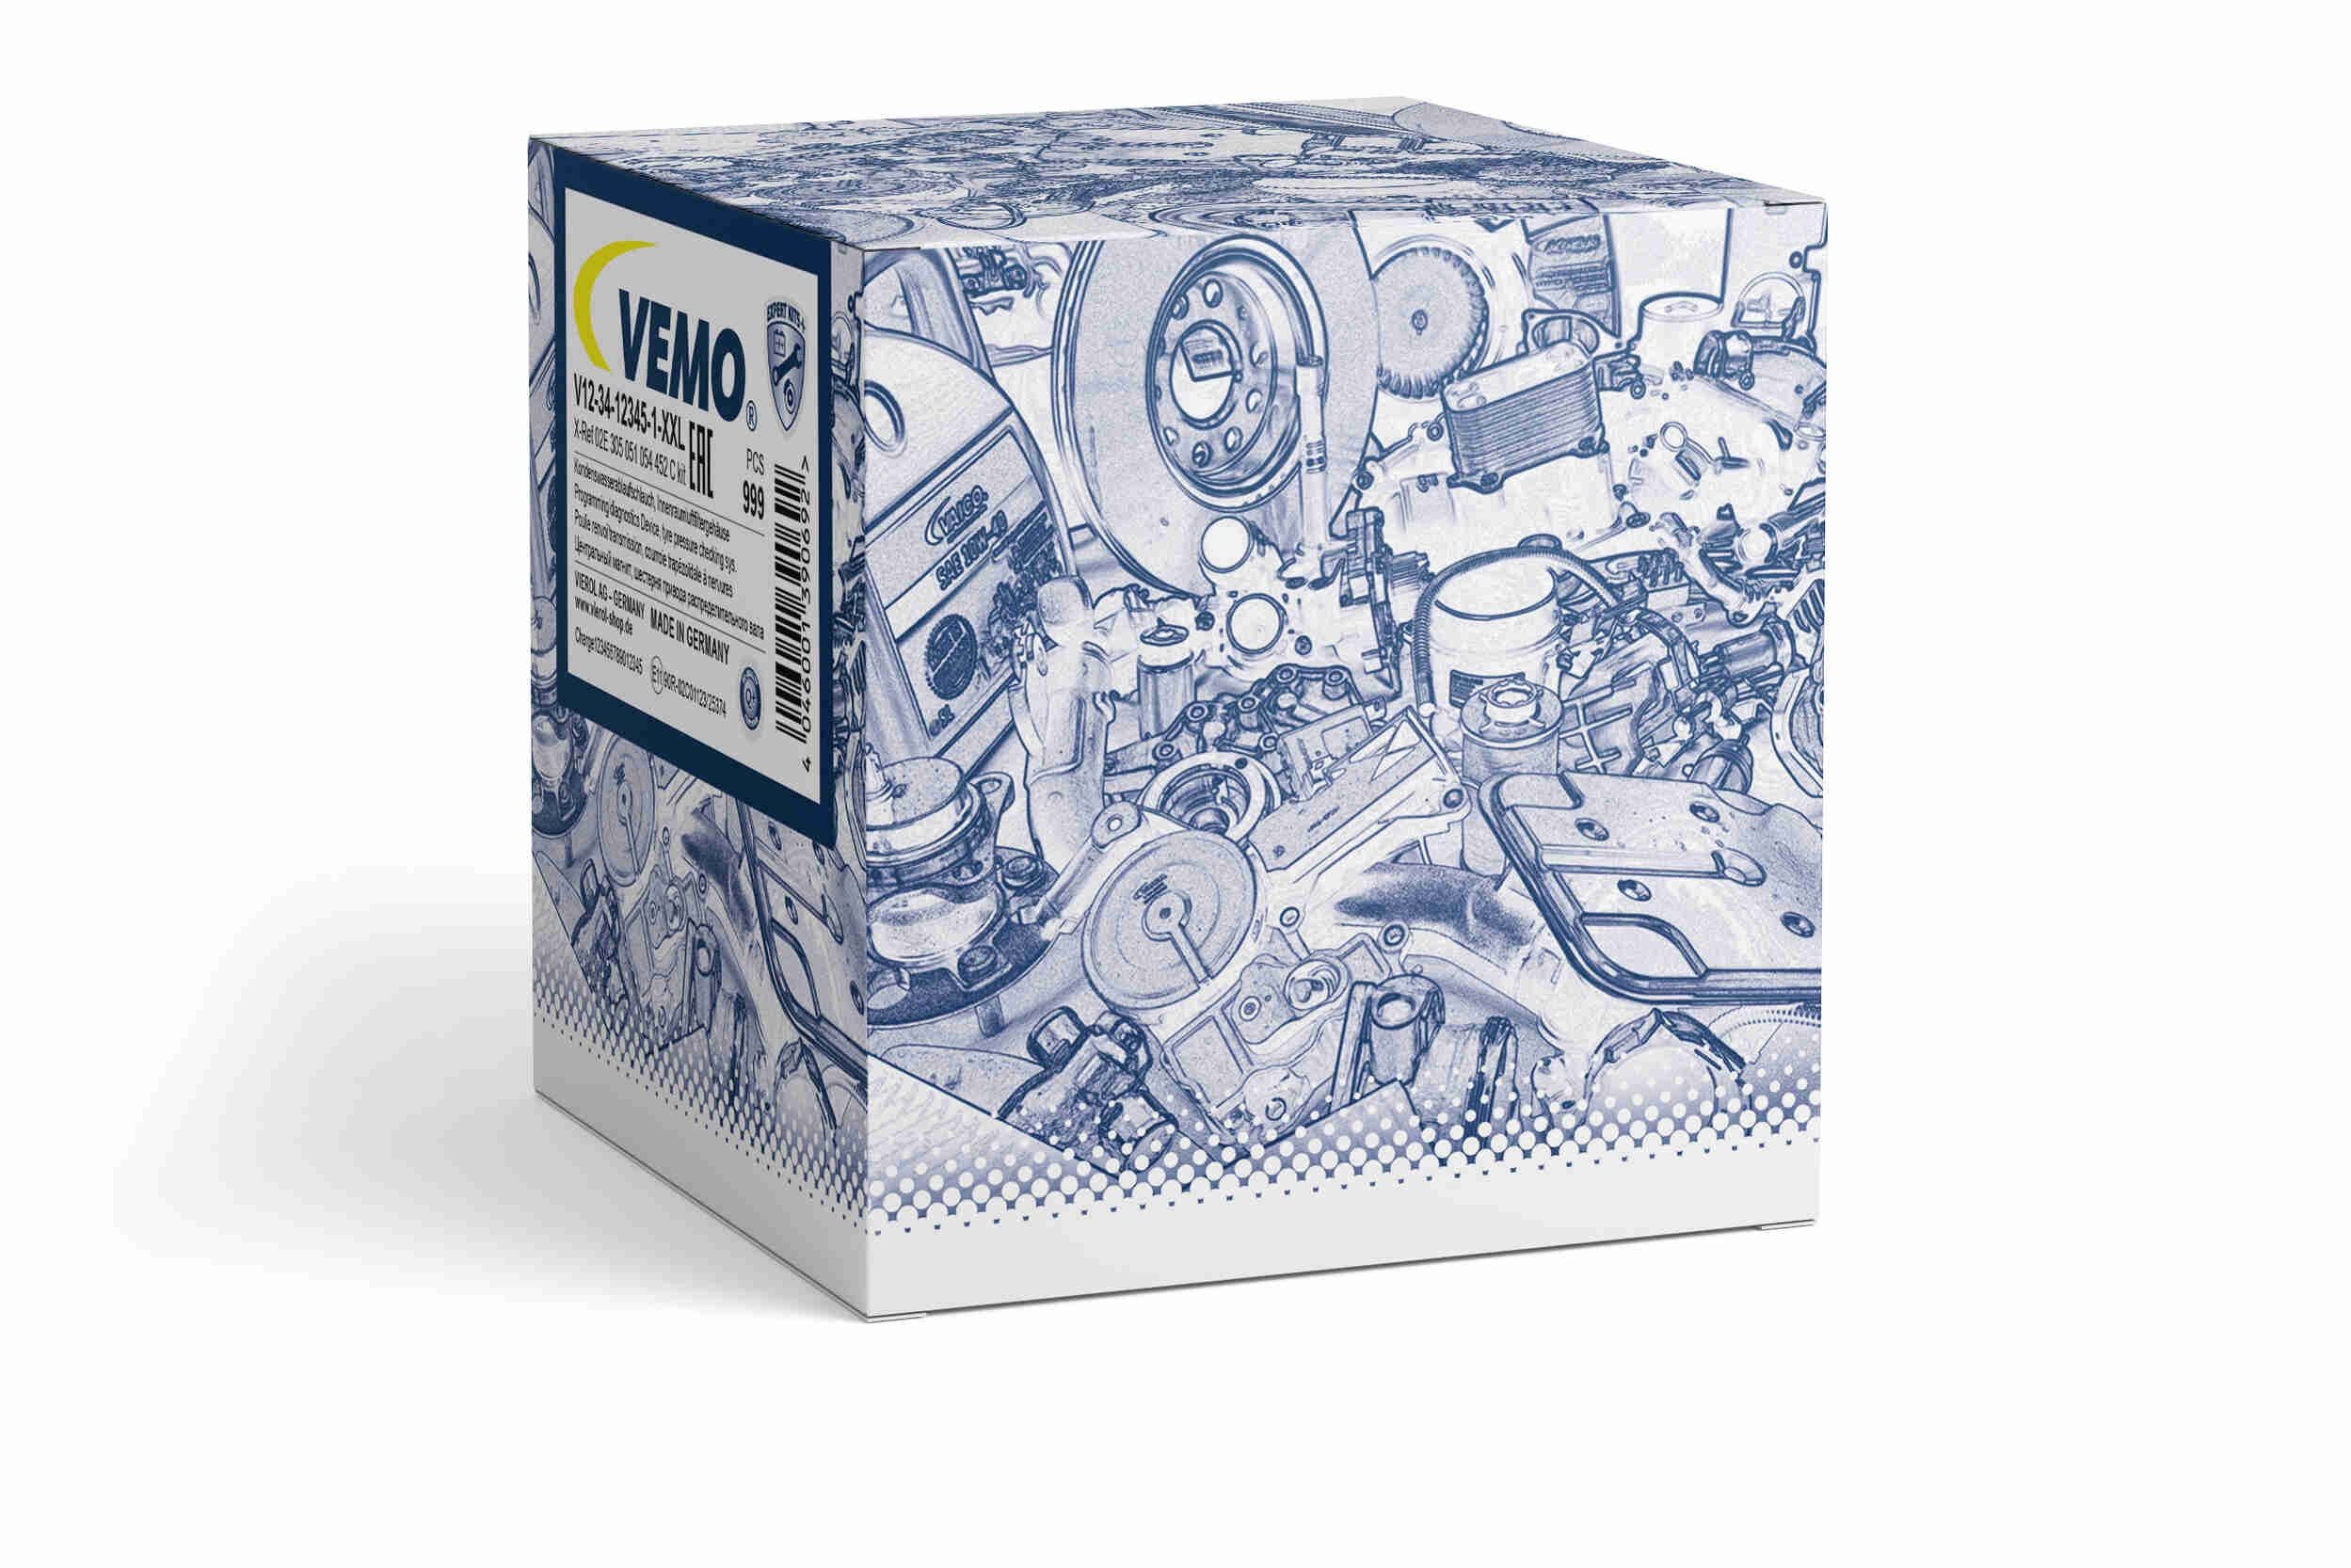 VEMO V30-72-0184 Sensor, engine oil level Q+, original equipment manufacturer quality